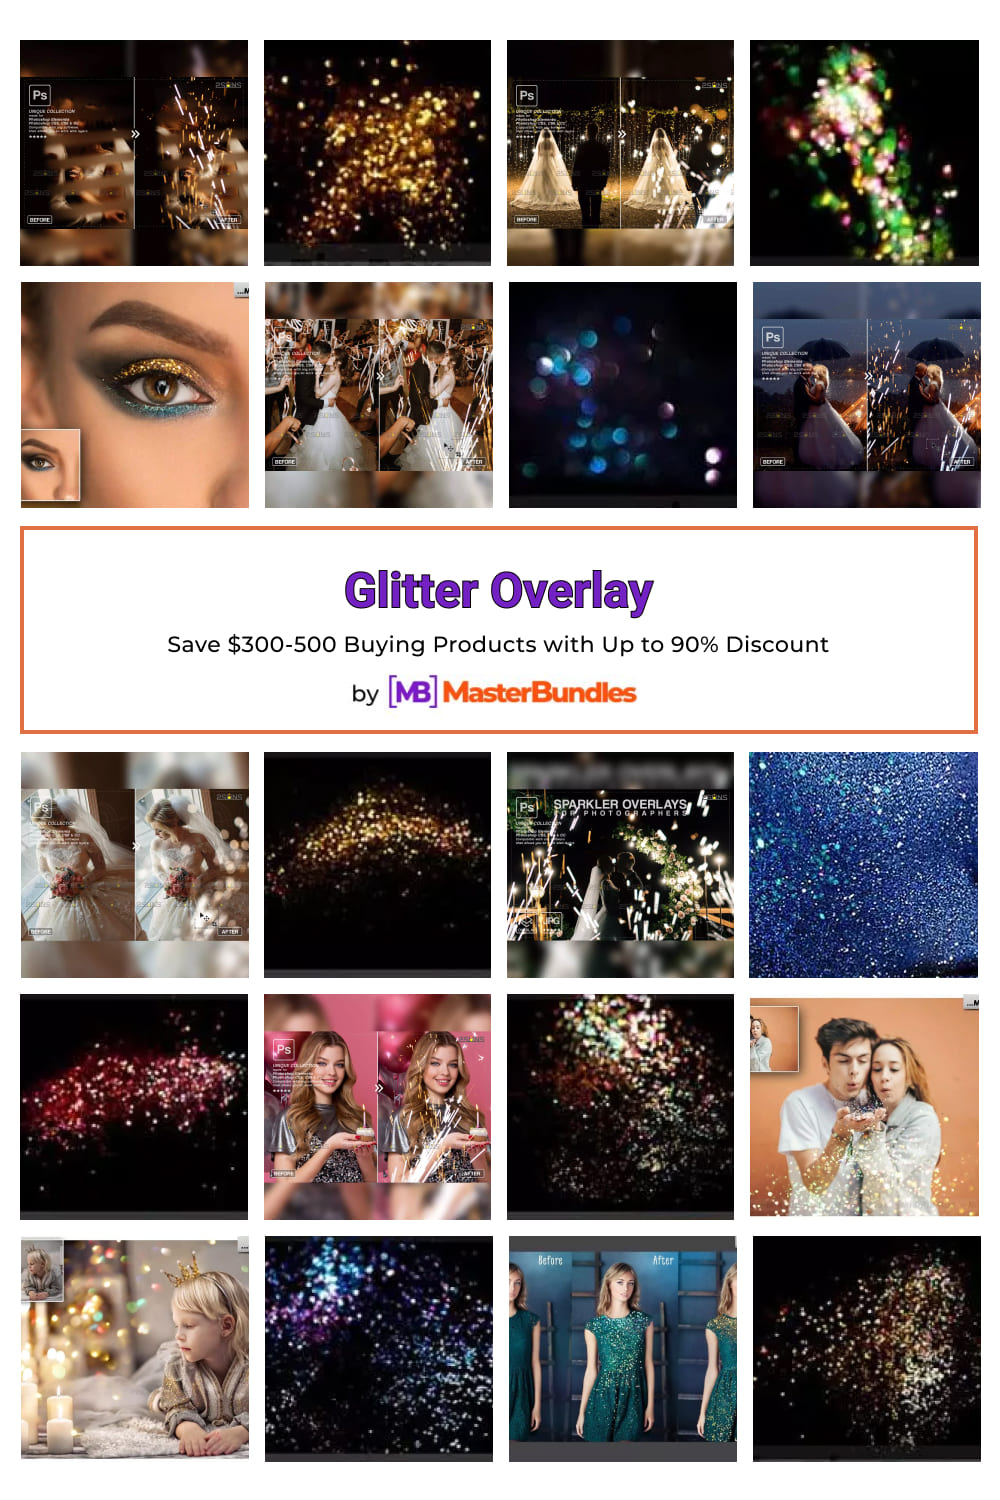 Glitter Overlay Pinterest image.